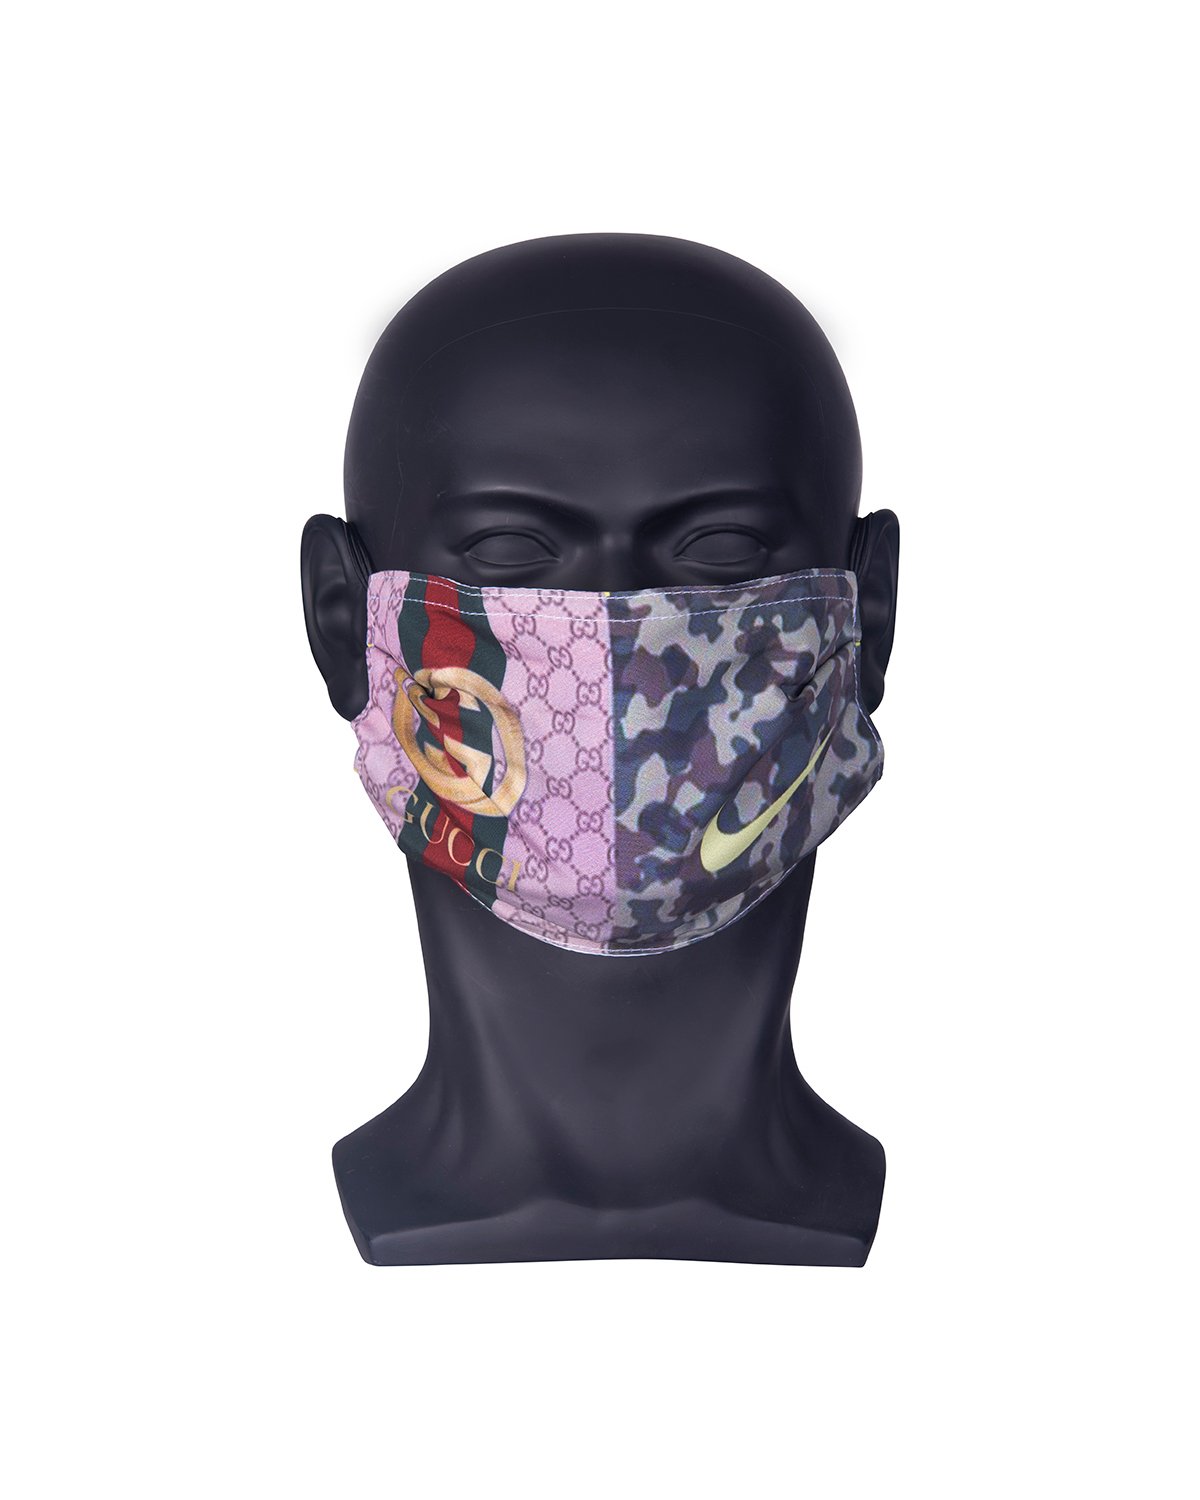 Gucci/Nike Mask – Mi Gente Customs